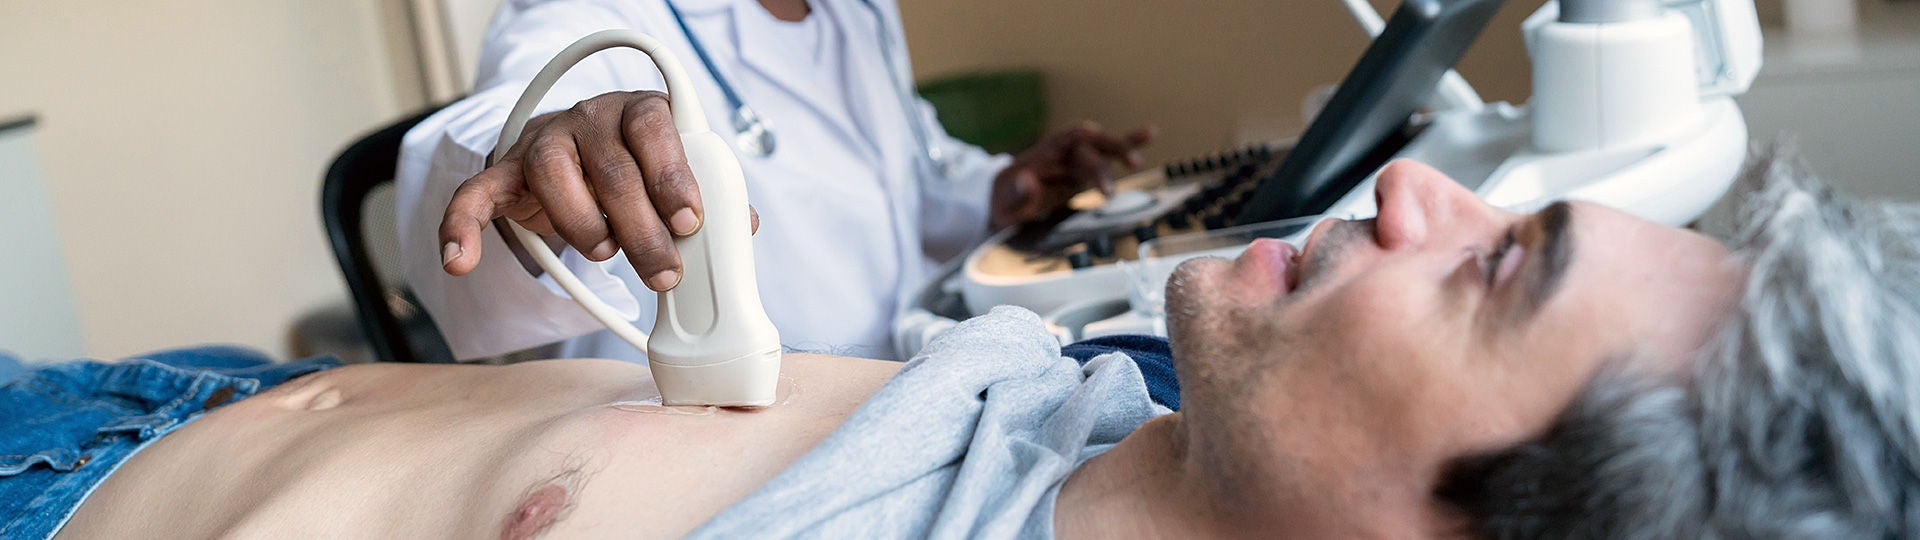 Ein Arzt untersucht mit einem Herz-Ultraschall einen Patienten.